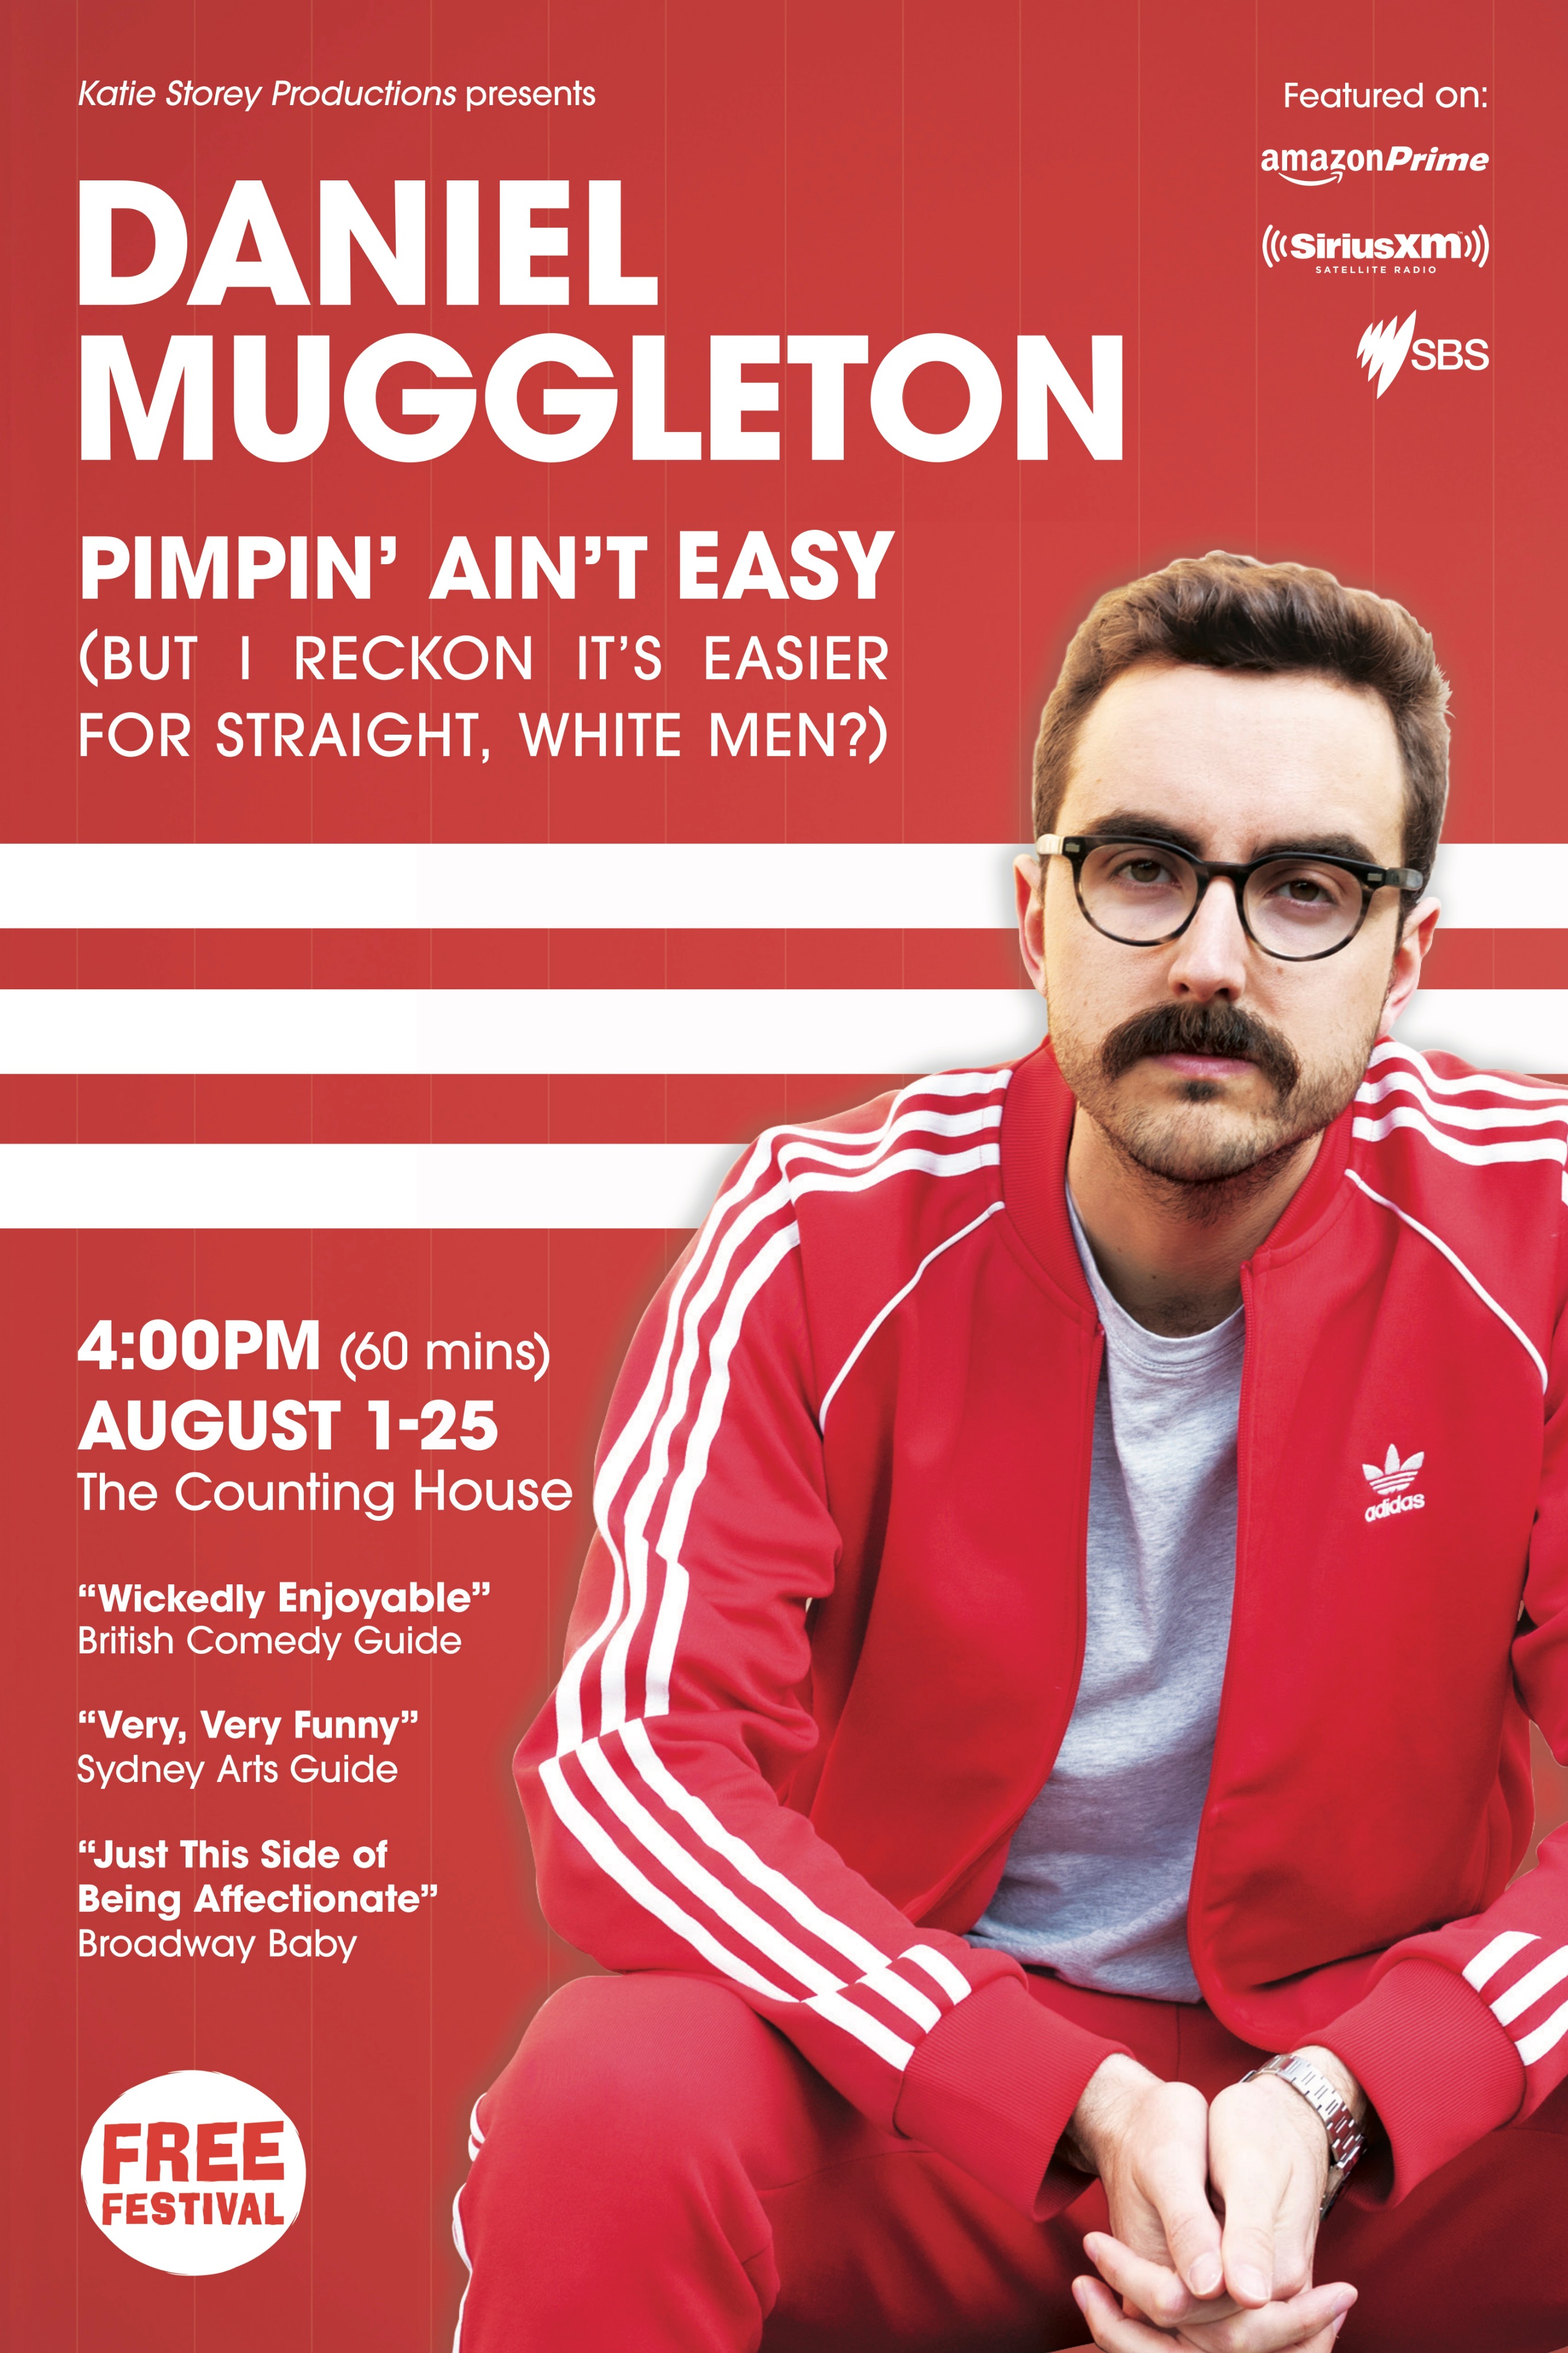 The poster for Daniel Muggleton: Pimpin' Ain't Easy (But I Reckon it's Easier for Straight, White Men?)